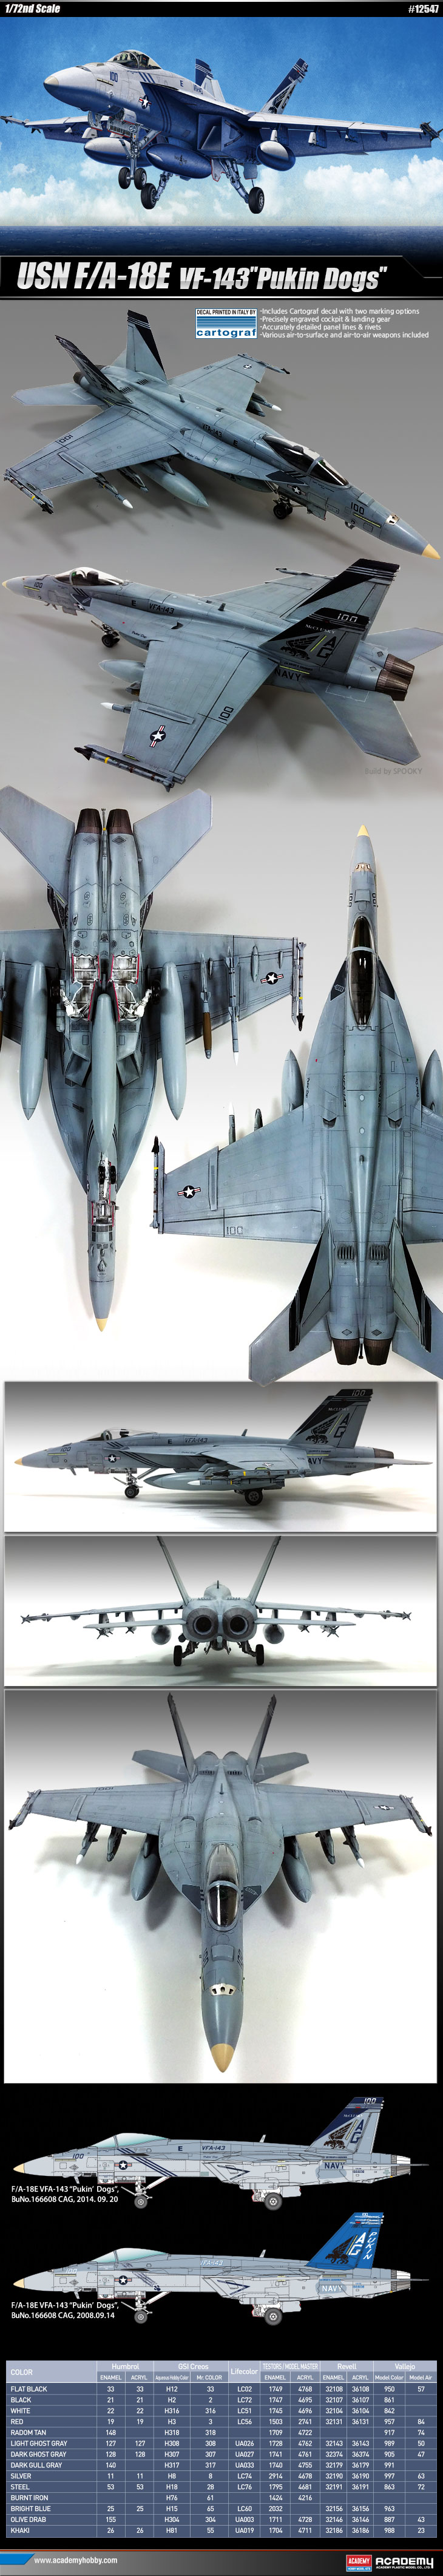 1/72 F/A-18E "VFA-143 ピューキン・ドッグス" - ウインドウを閉じる